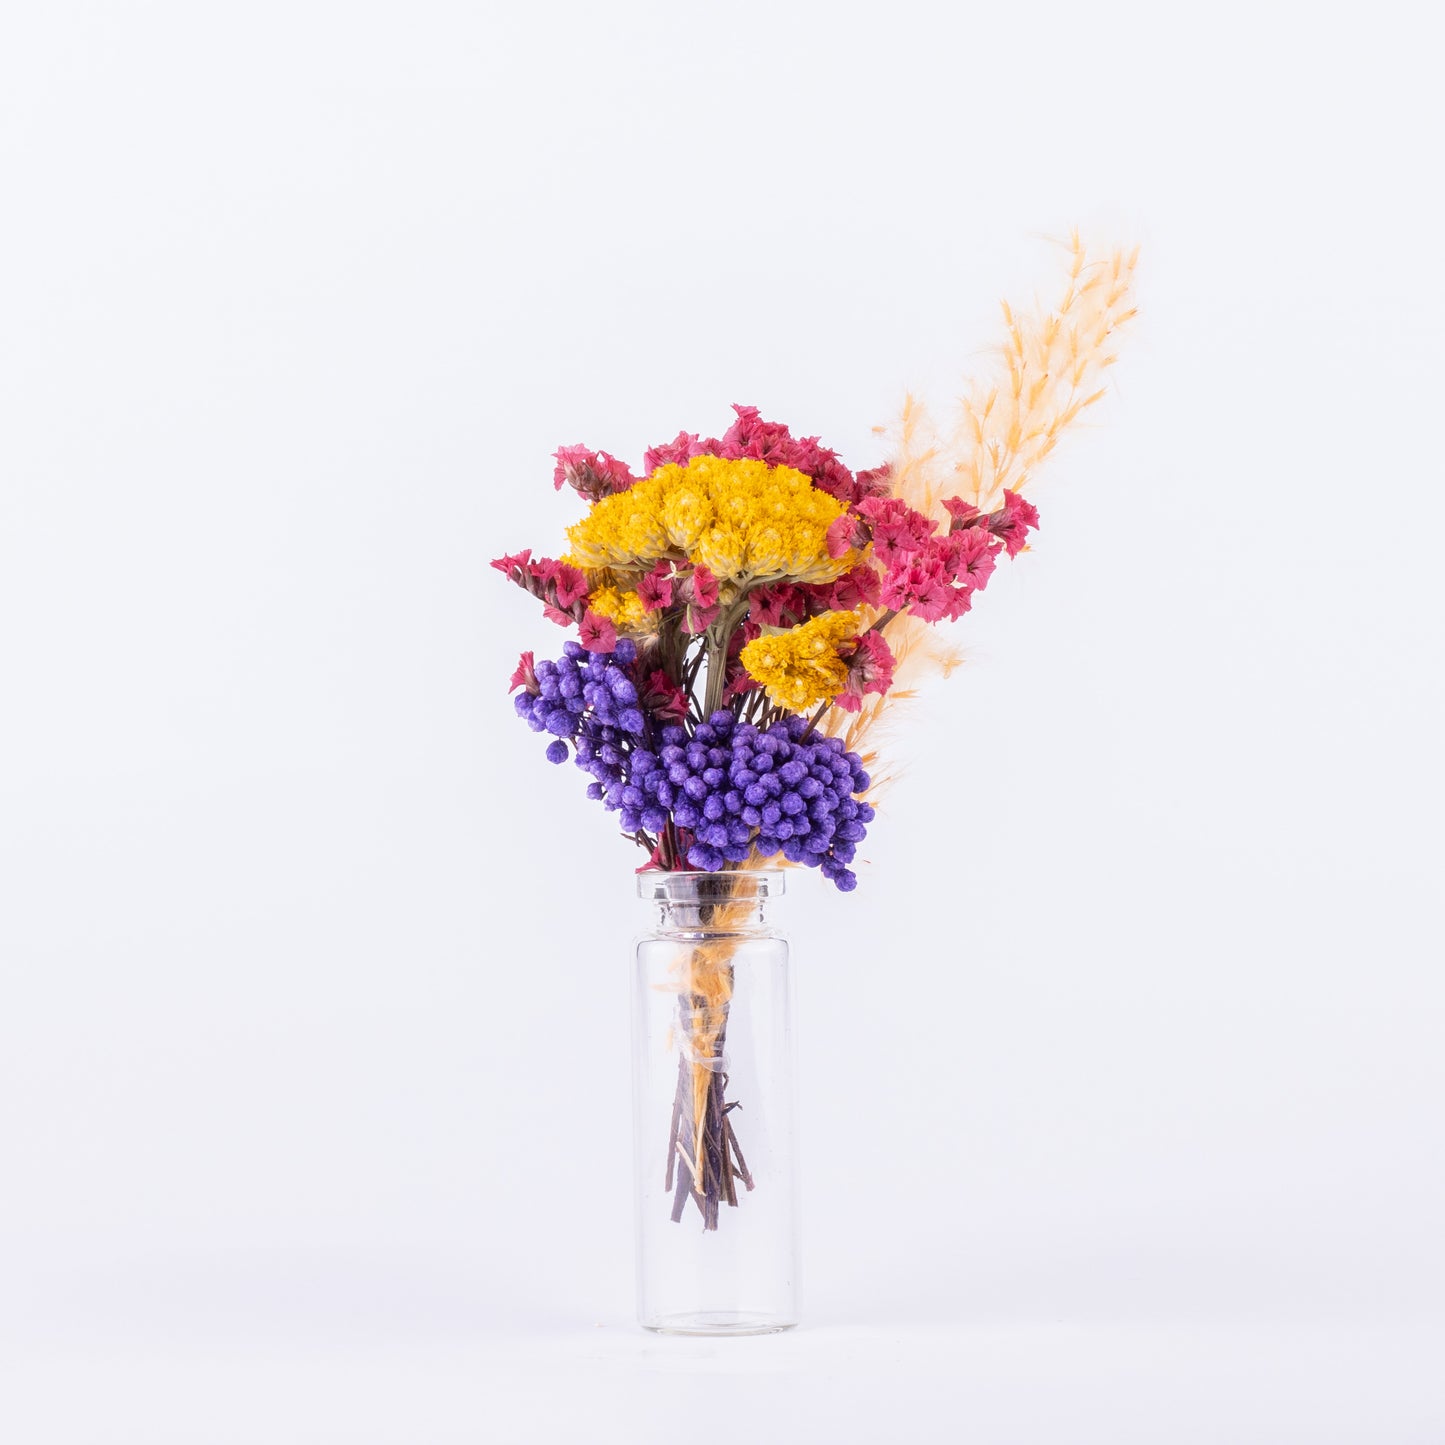 Kleiner Blumenstrauß mit Vase und Geschenkverpackung - Geschenk für Hochzeit und Geburtstag